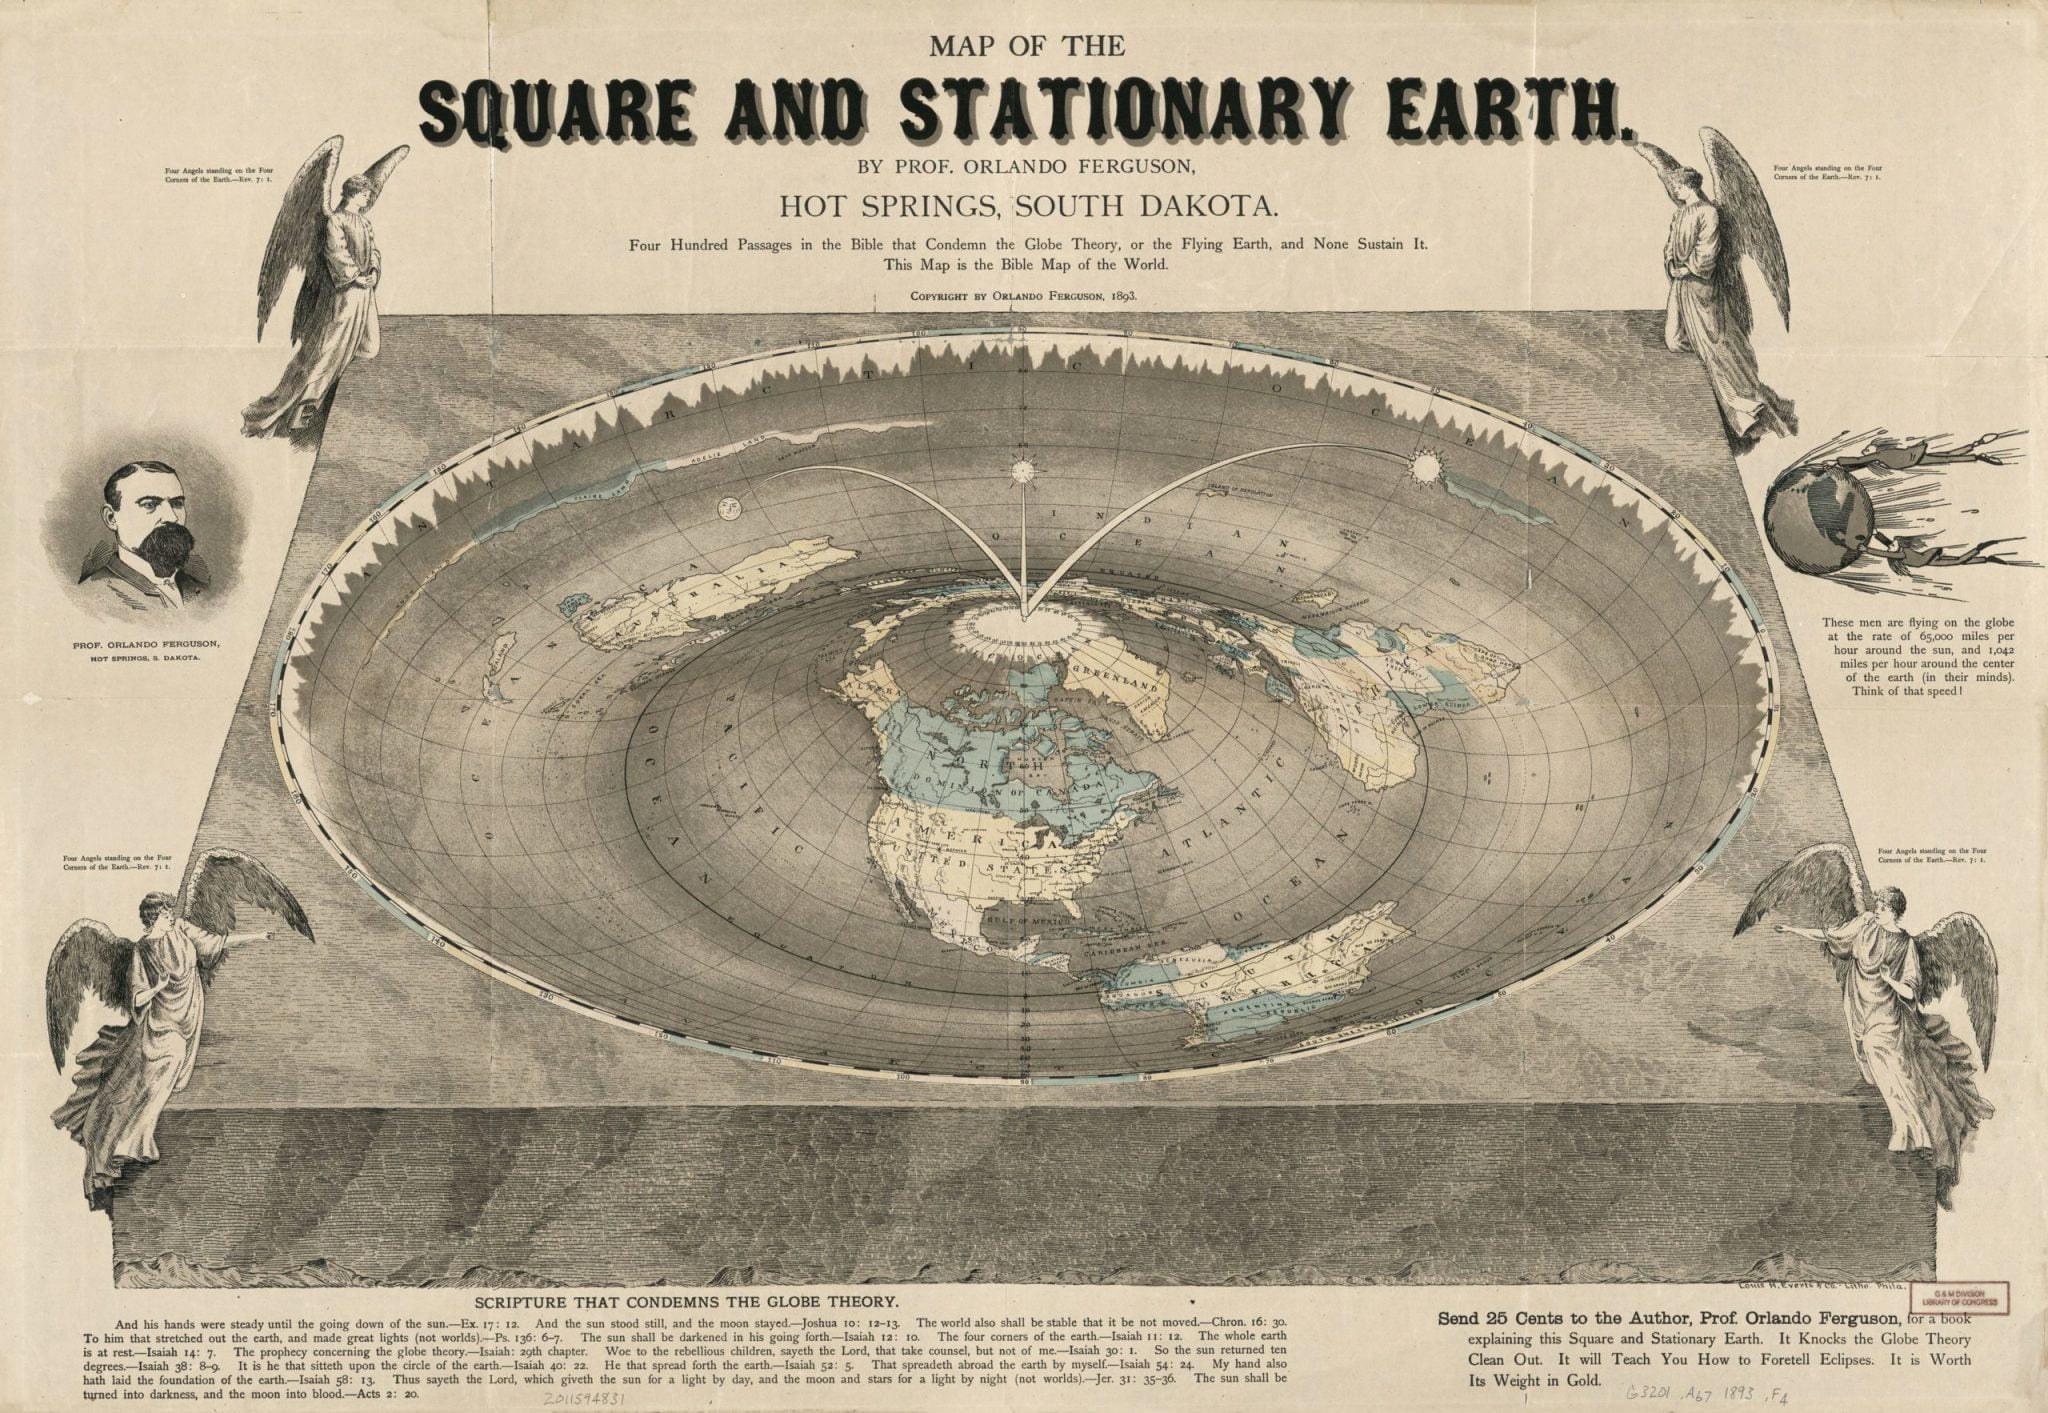 Карта квадратной и неподвижной Земли (с) Орландо Фергюсон 1893